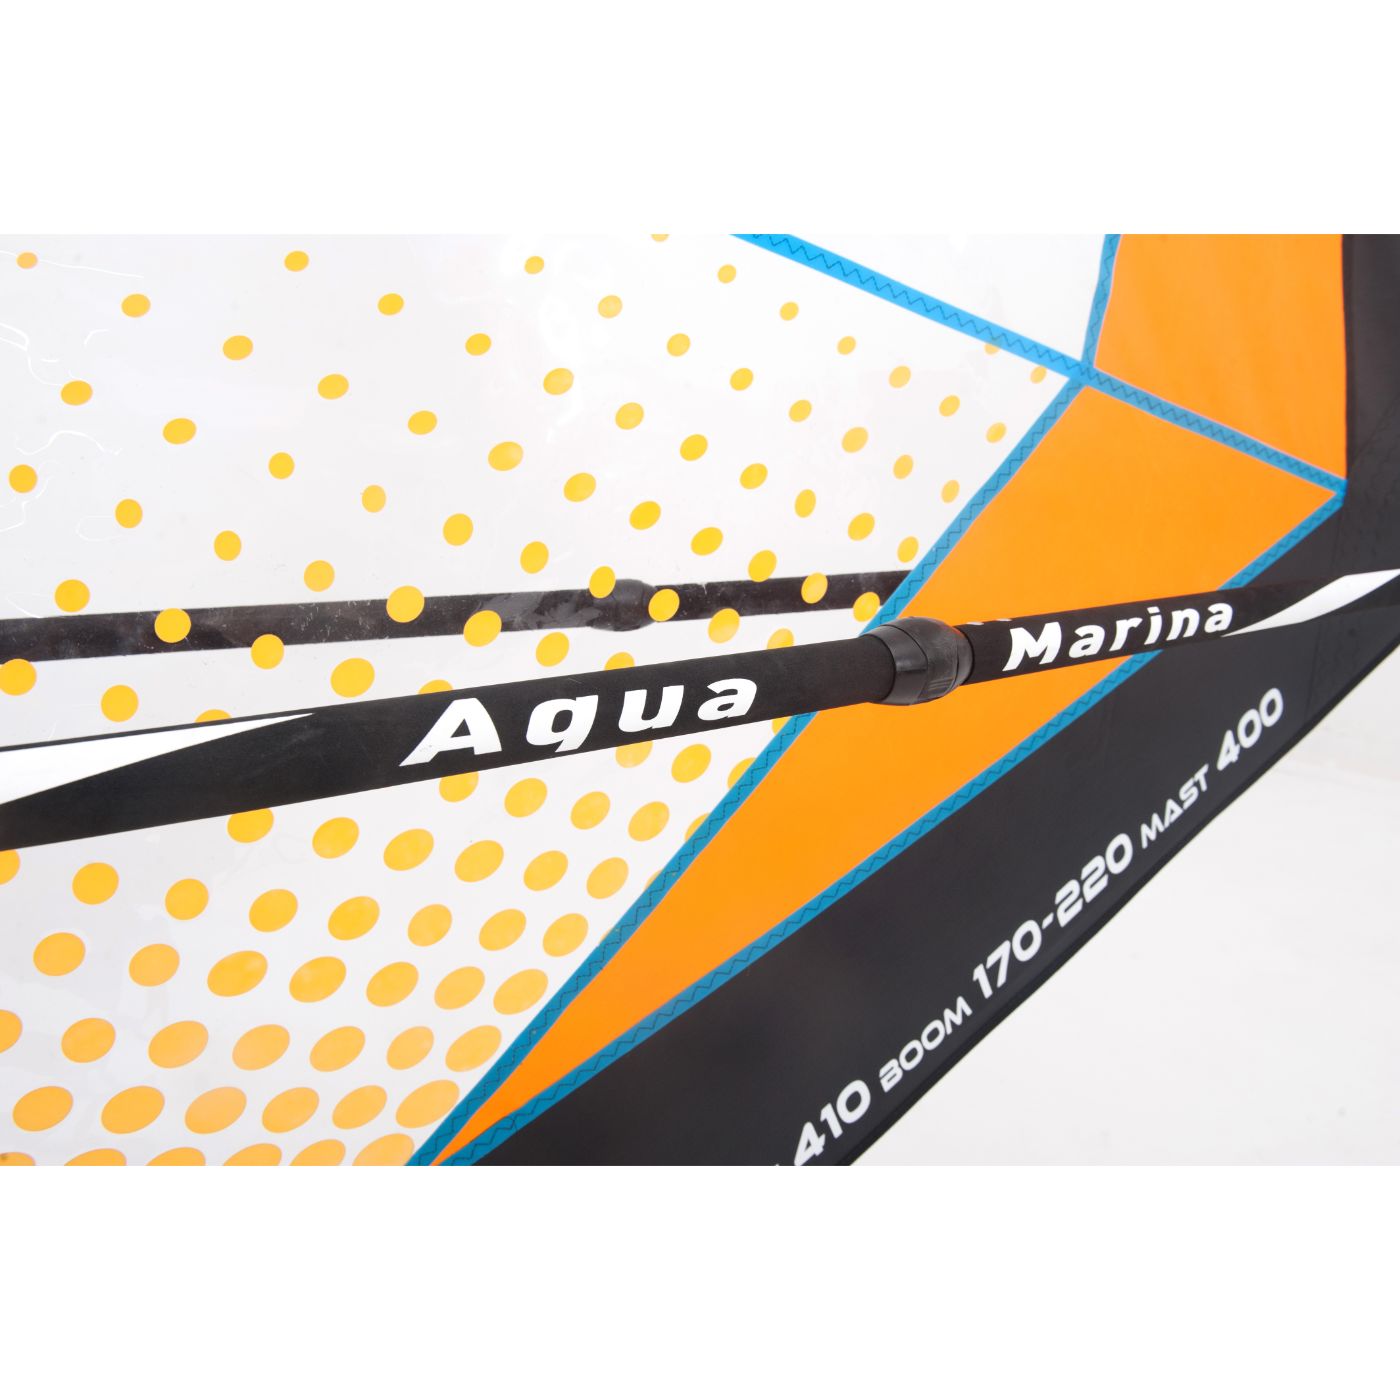 Aqua Marina Blade